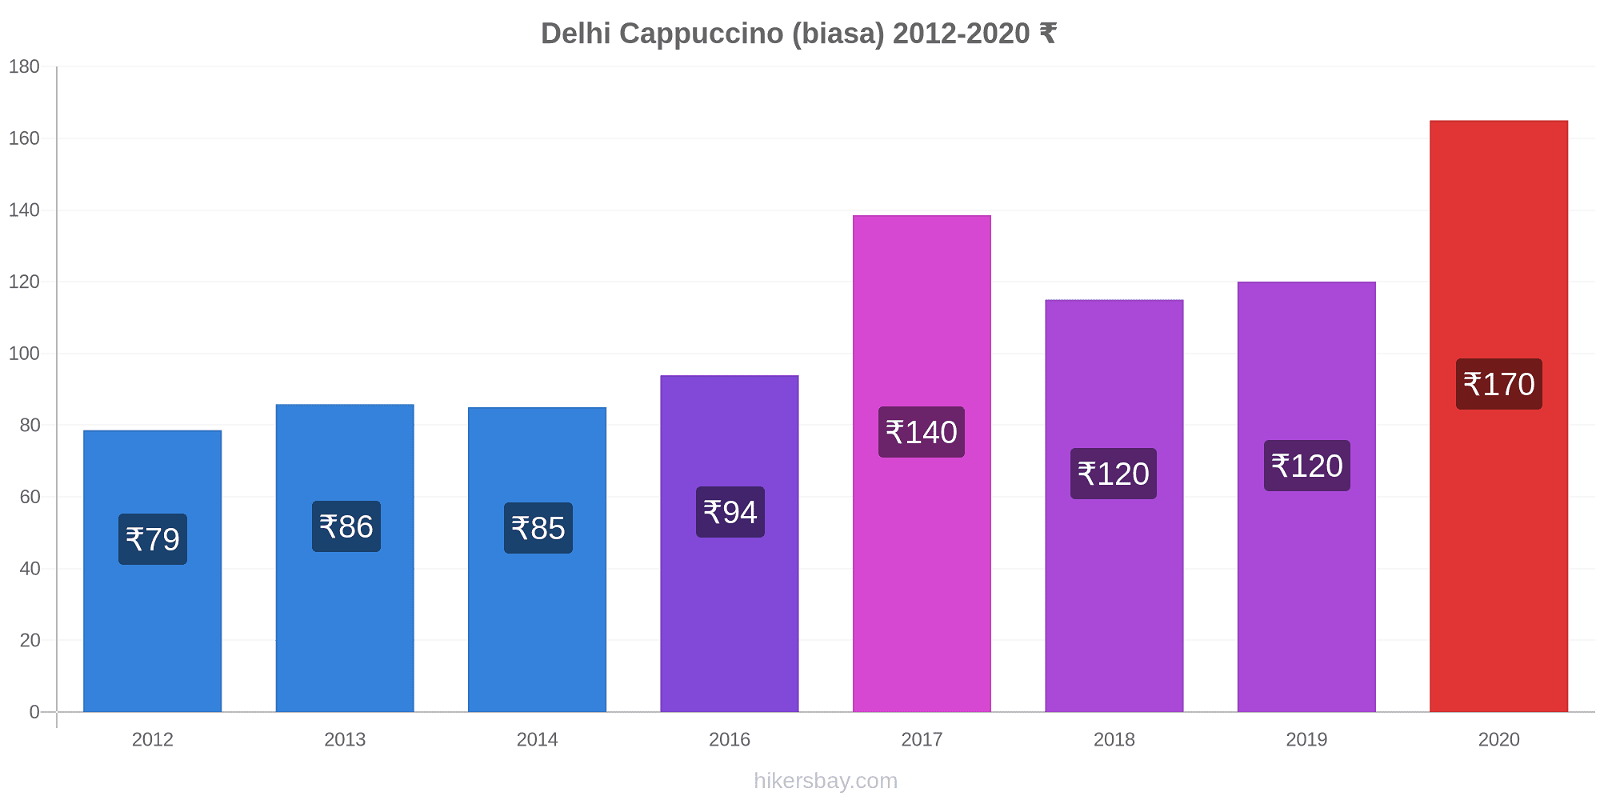 Delhi perubahan harga Cappuccino (biasa) hikersbay.com